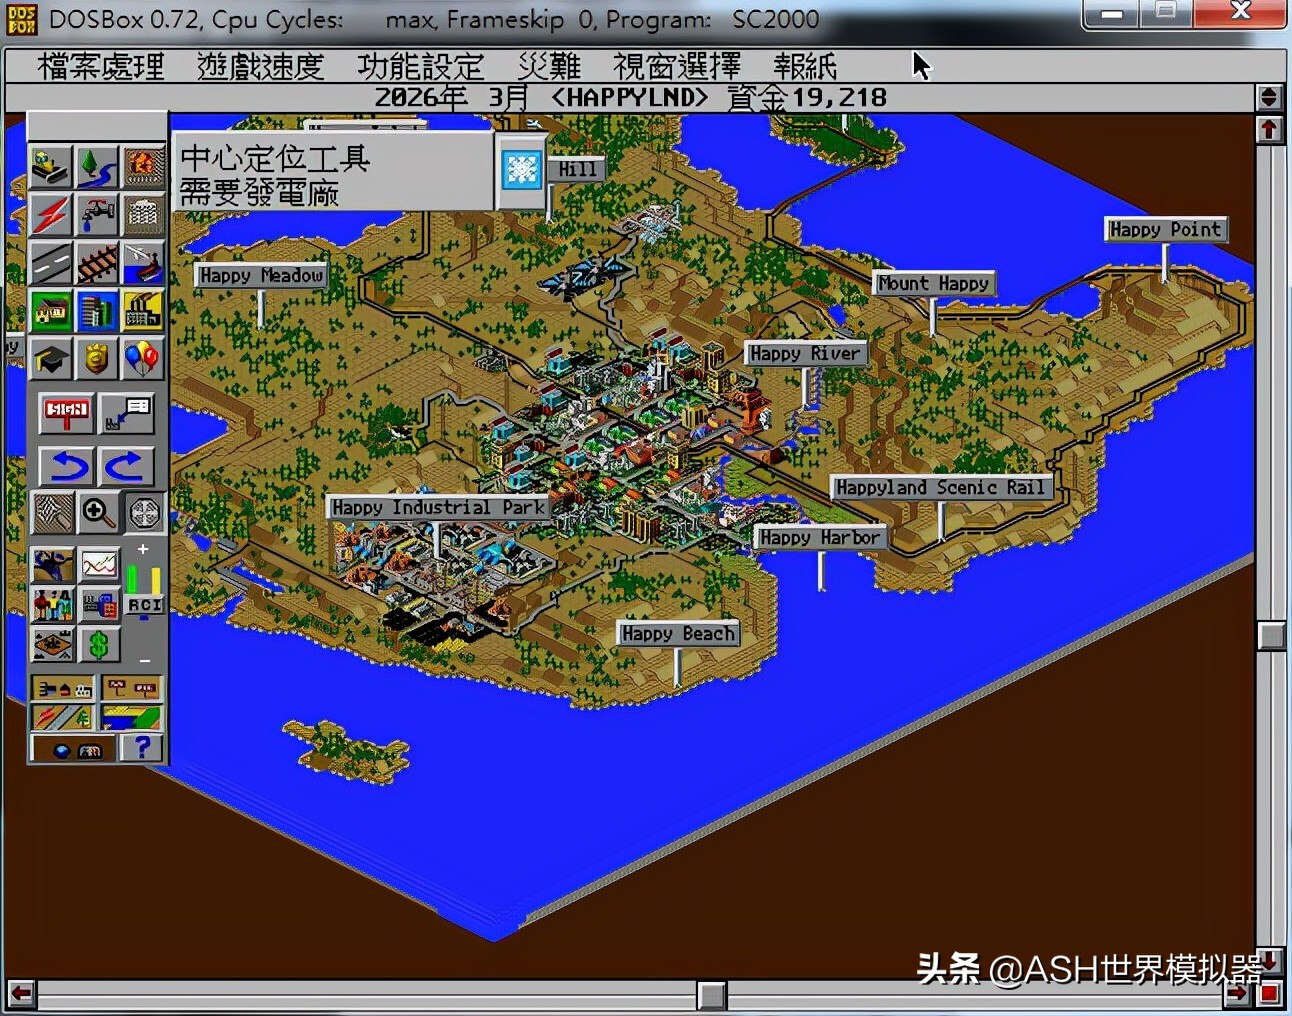 化石游戏系列《模拟城市》2000、3000、3000U下载分享